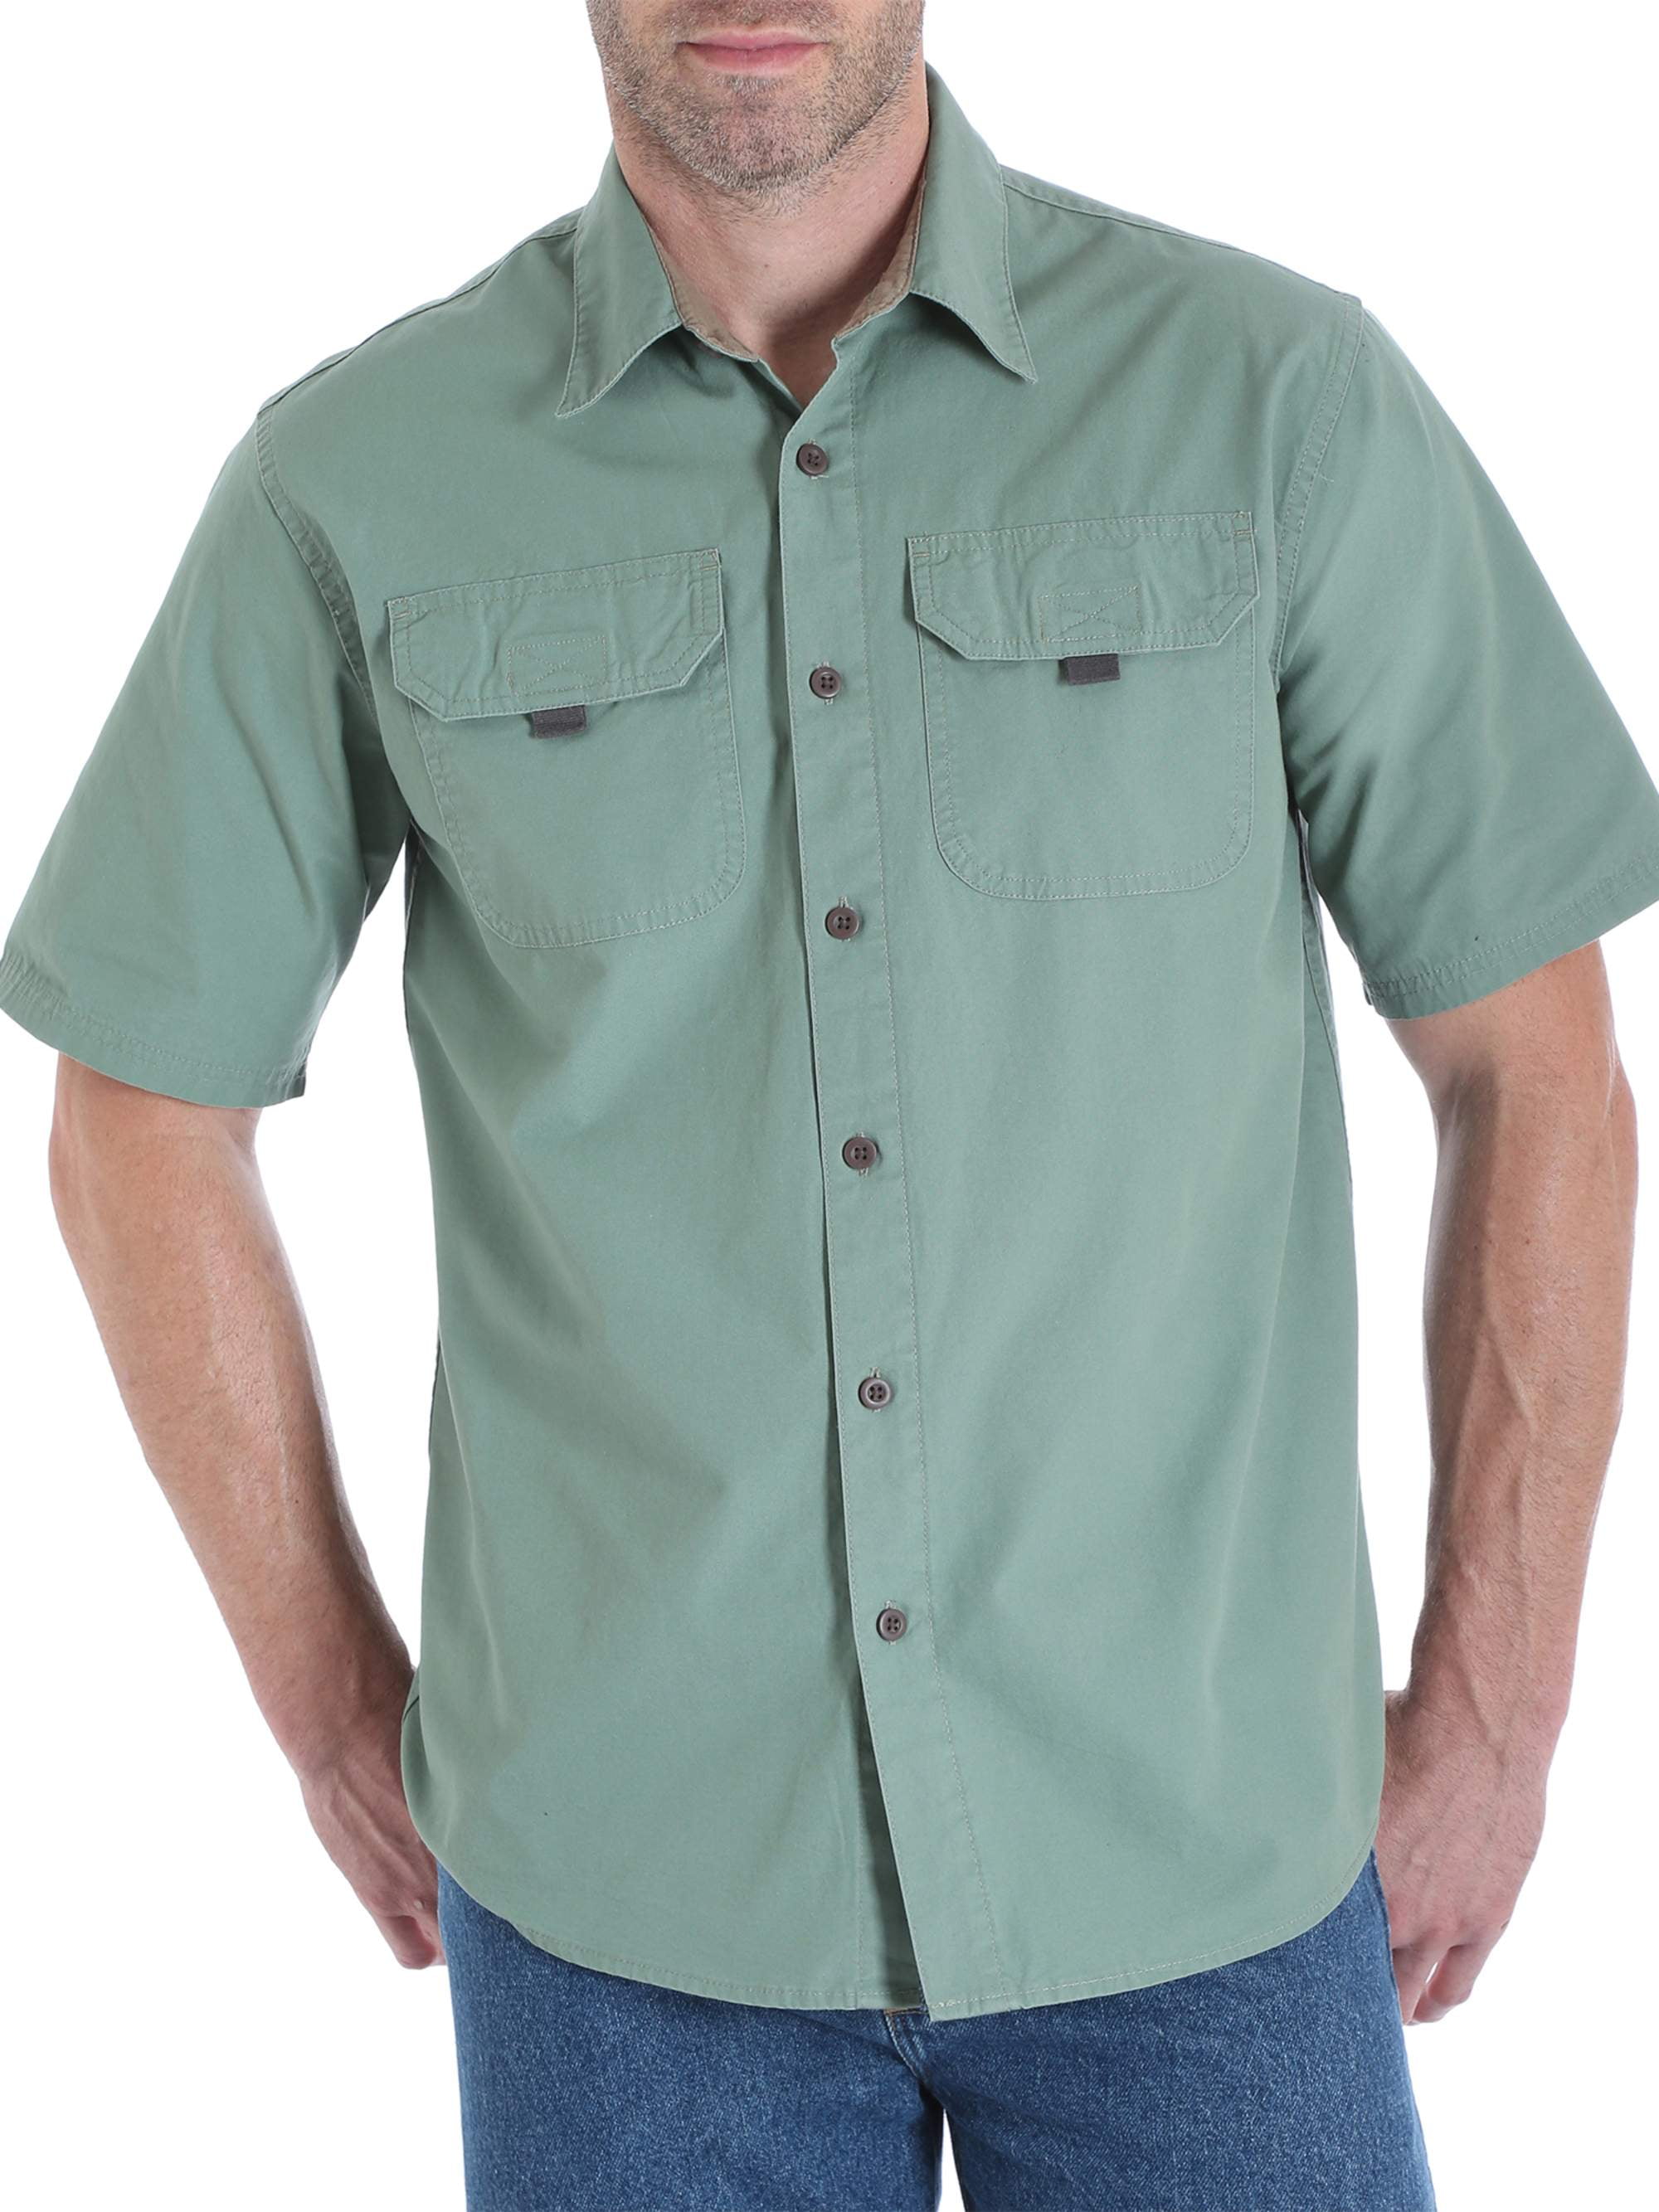 Men's Short Sleeve Canvas Shirt - Walmart.com